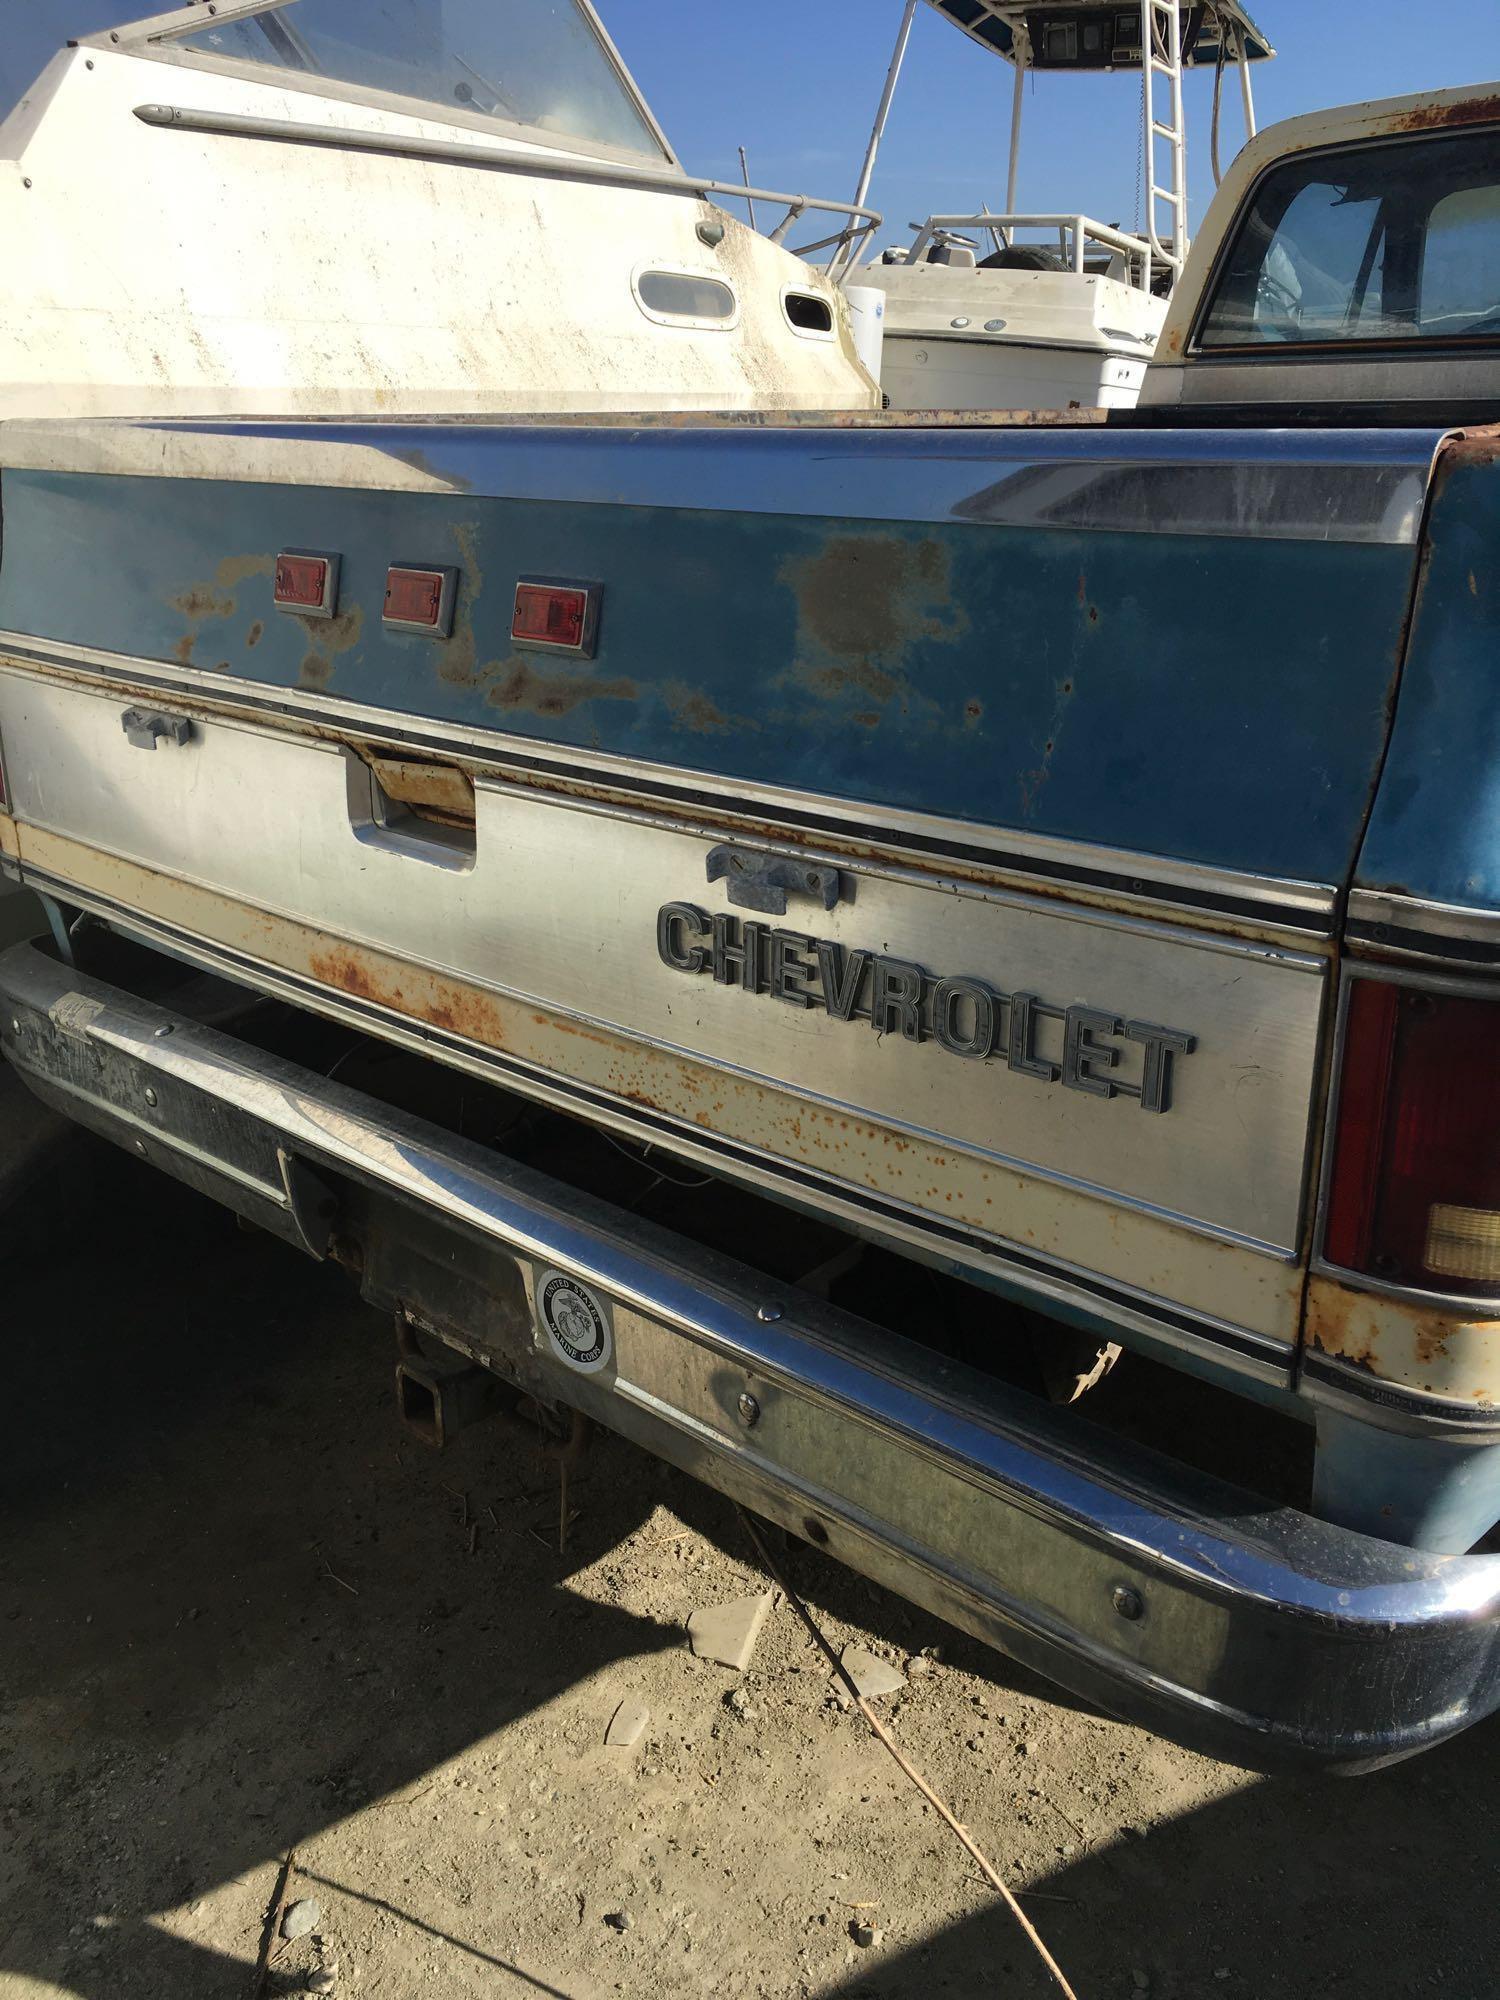 1976 Chevy Silverado 4X4 Truck - last 6 of Vin 160842